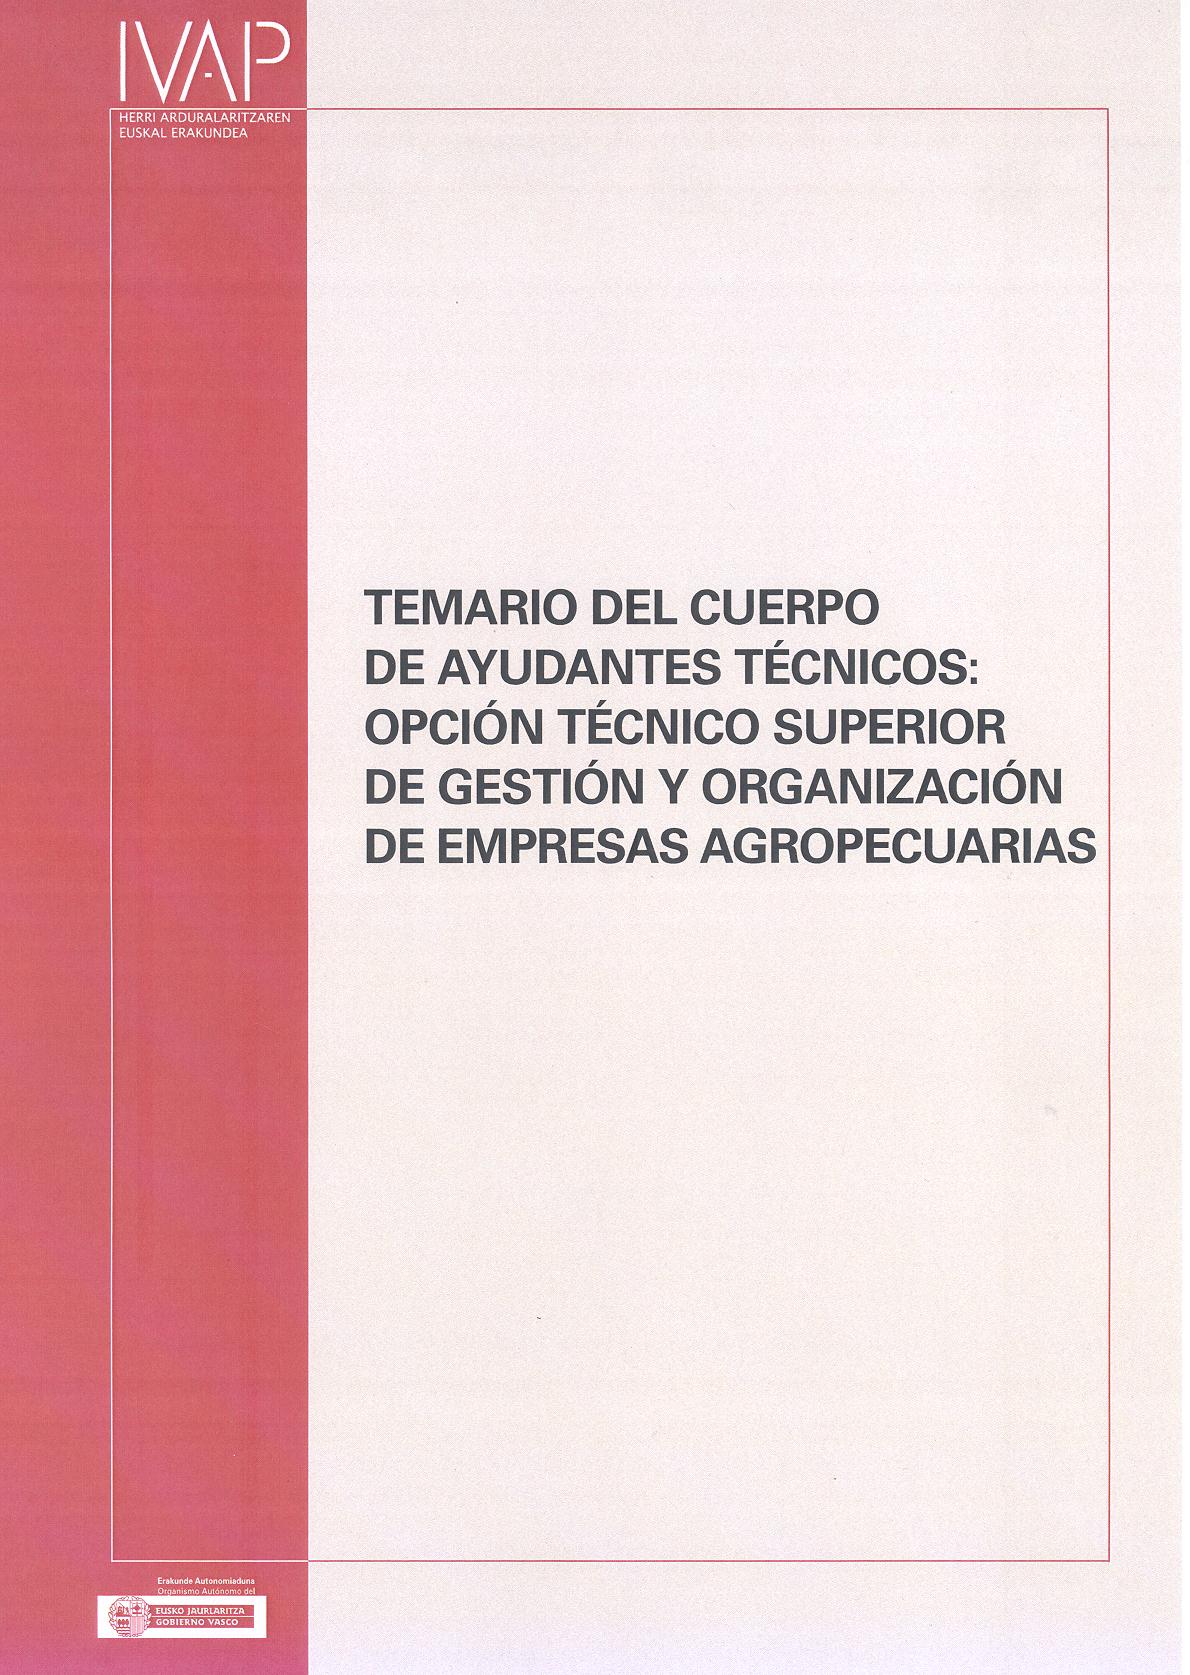 Temario del Cuerpo de Ayudantes Técnicos: Opción Técnico Superior de gestión y organización de empresas agropecuarias